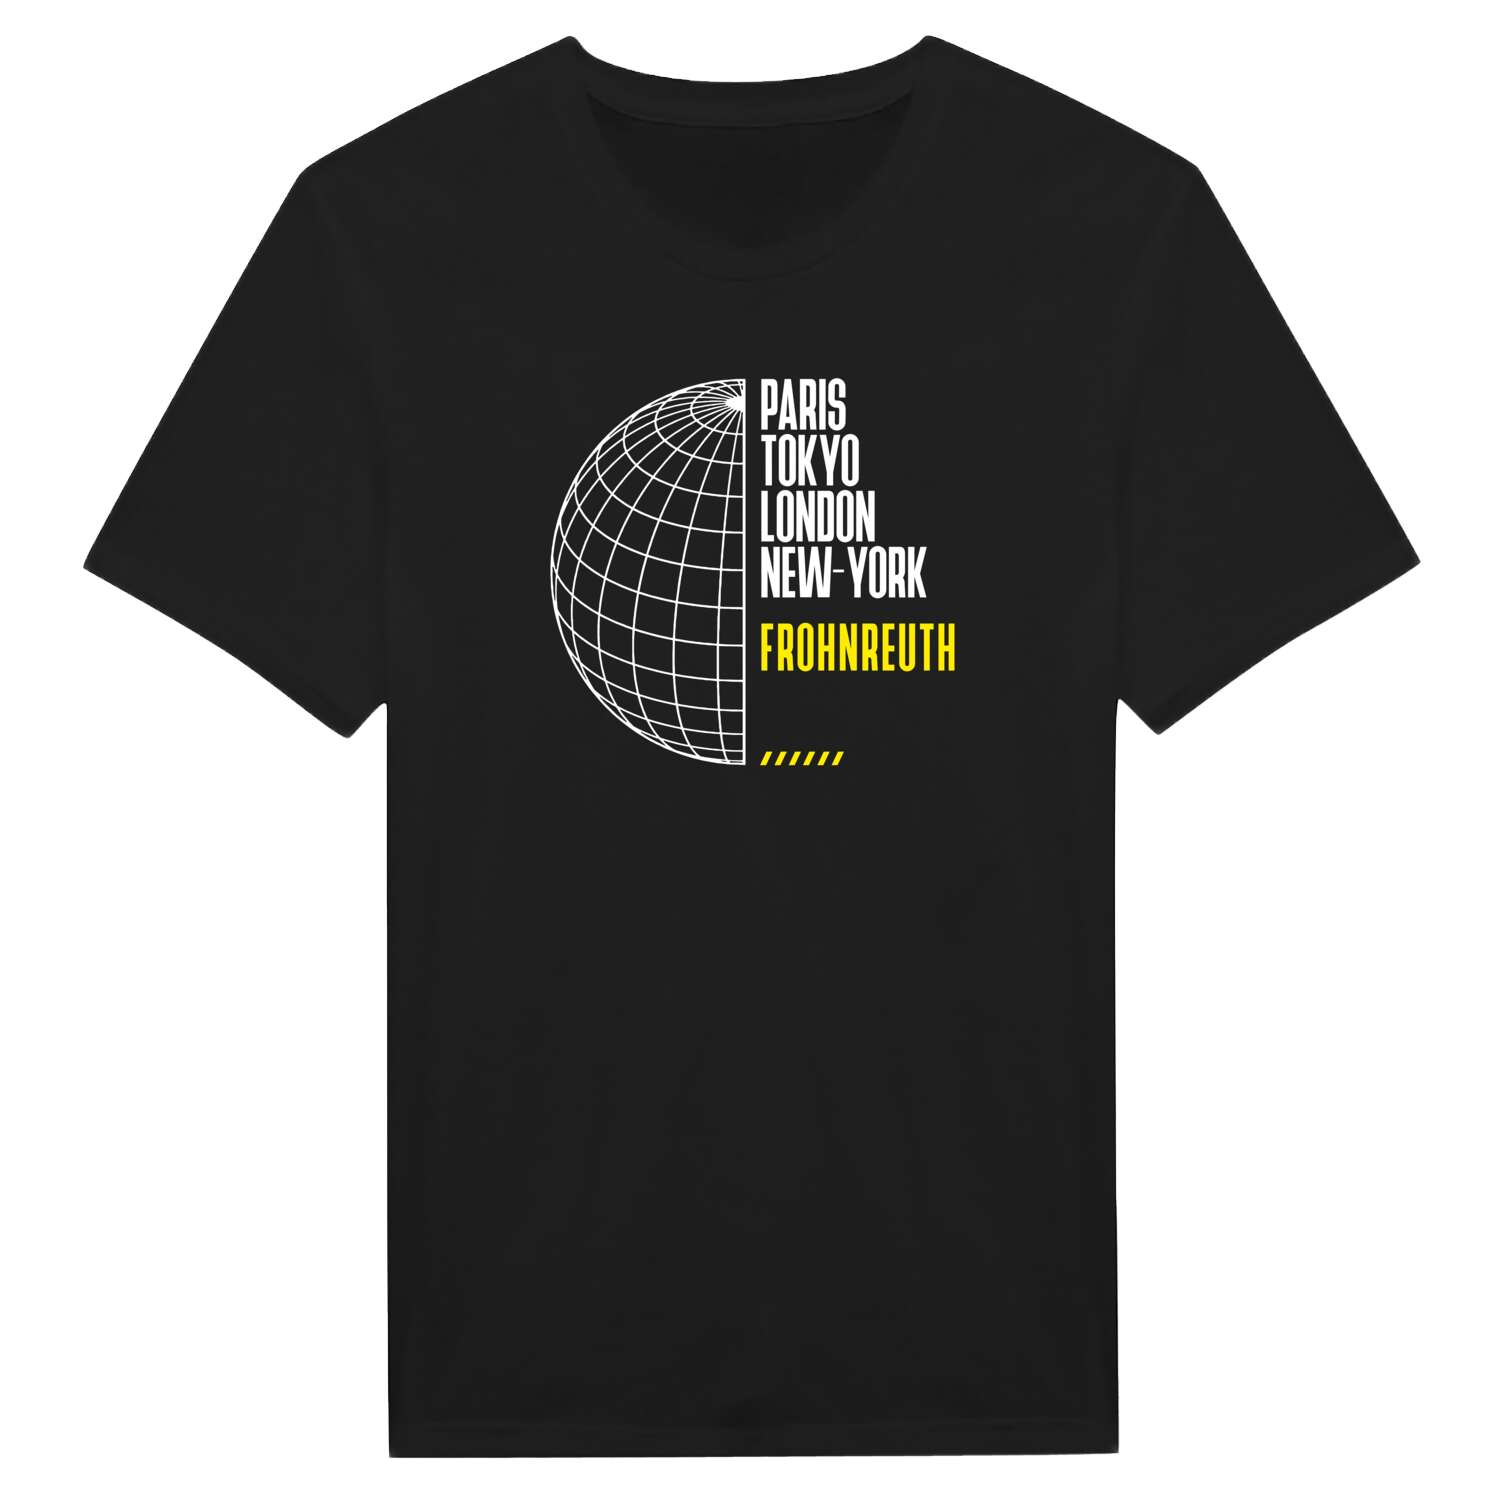 Frohnreuth T-Shirt »Paris Tokyo London«